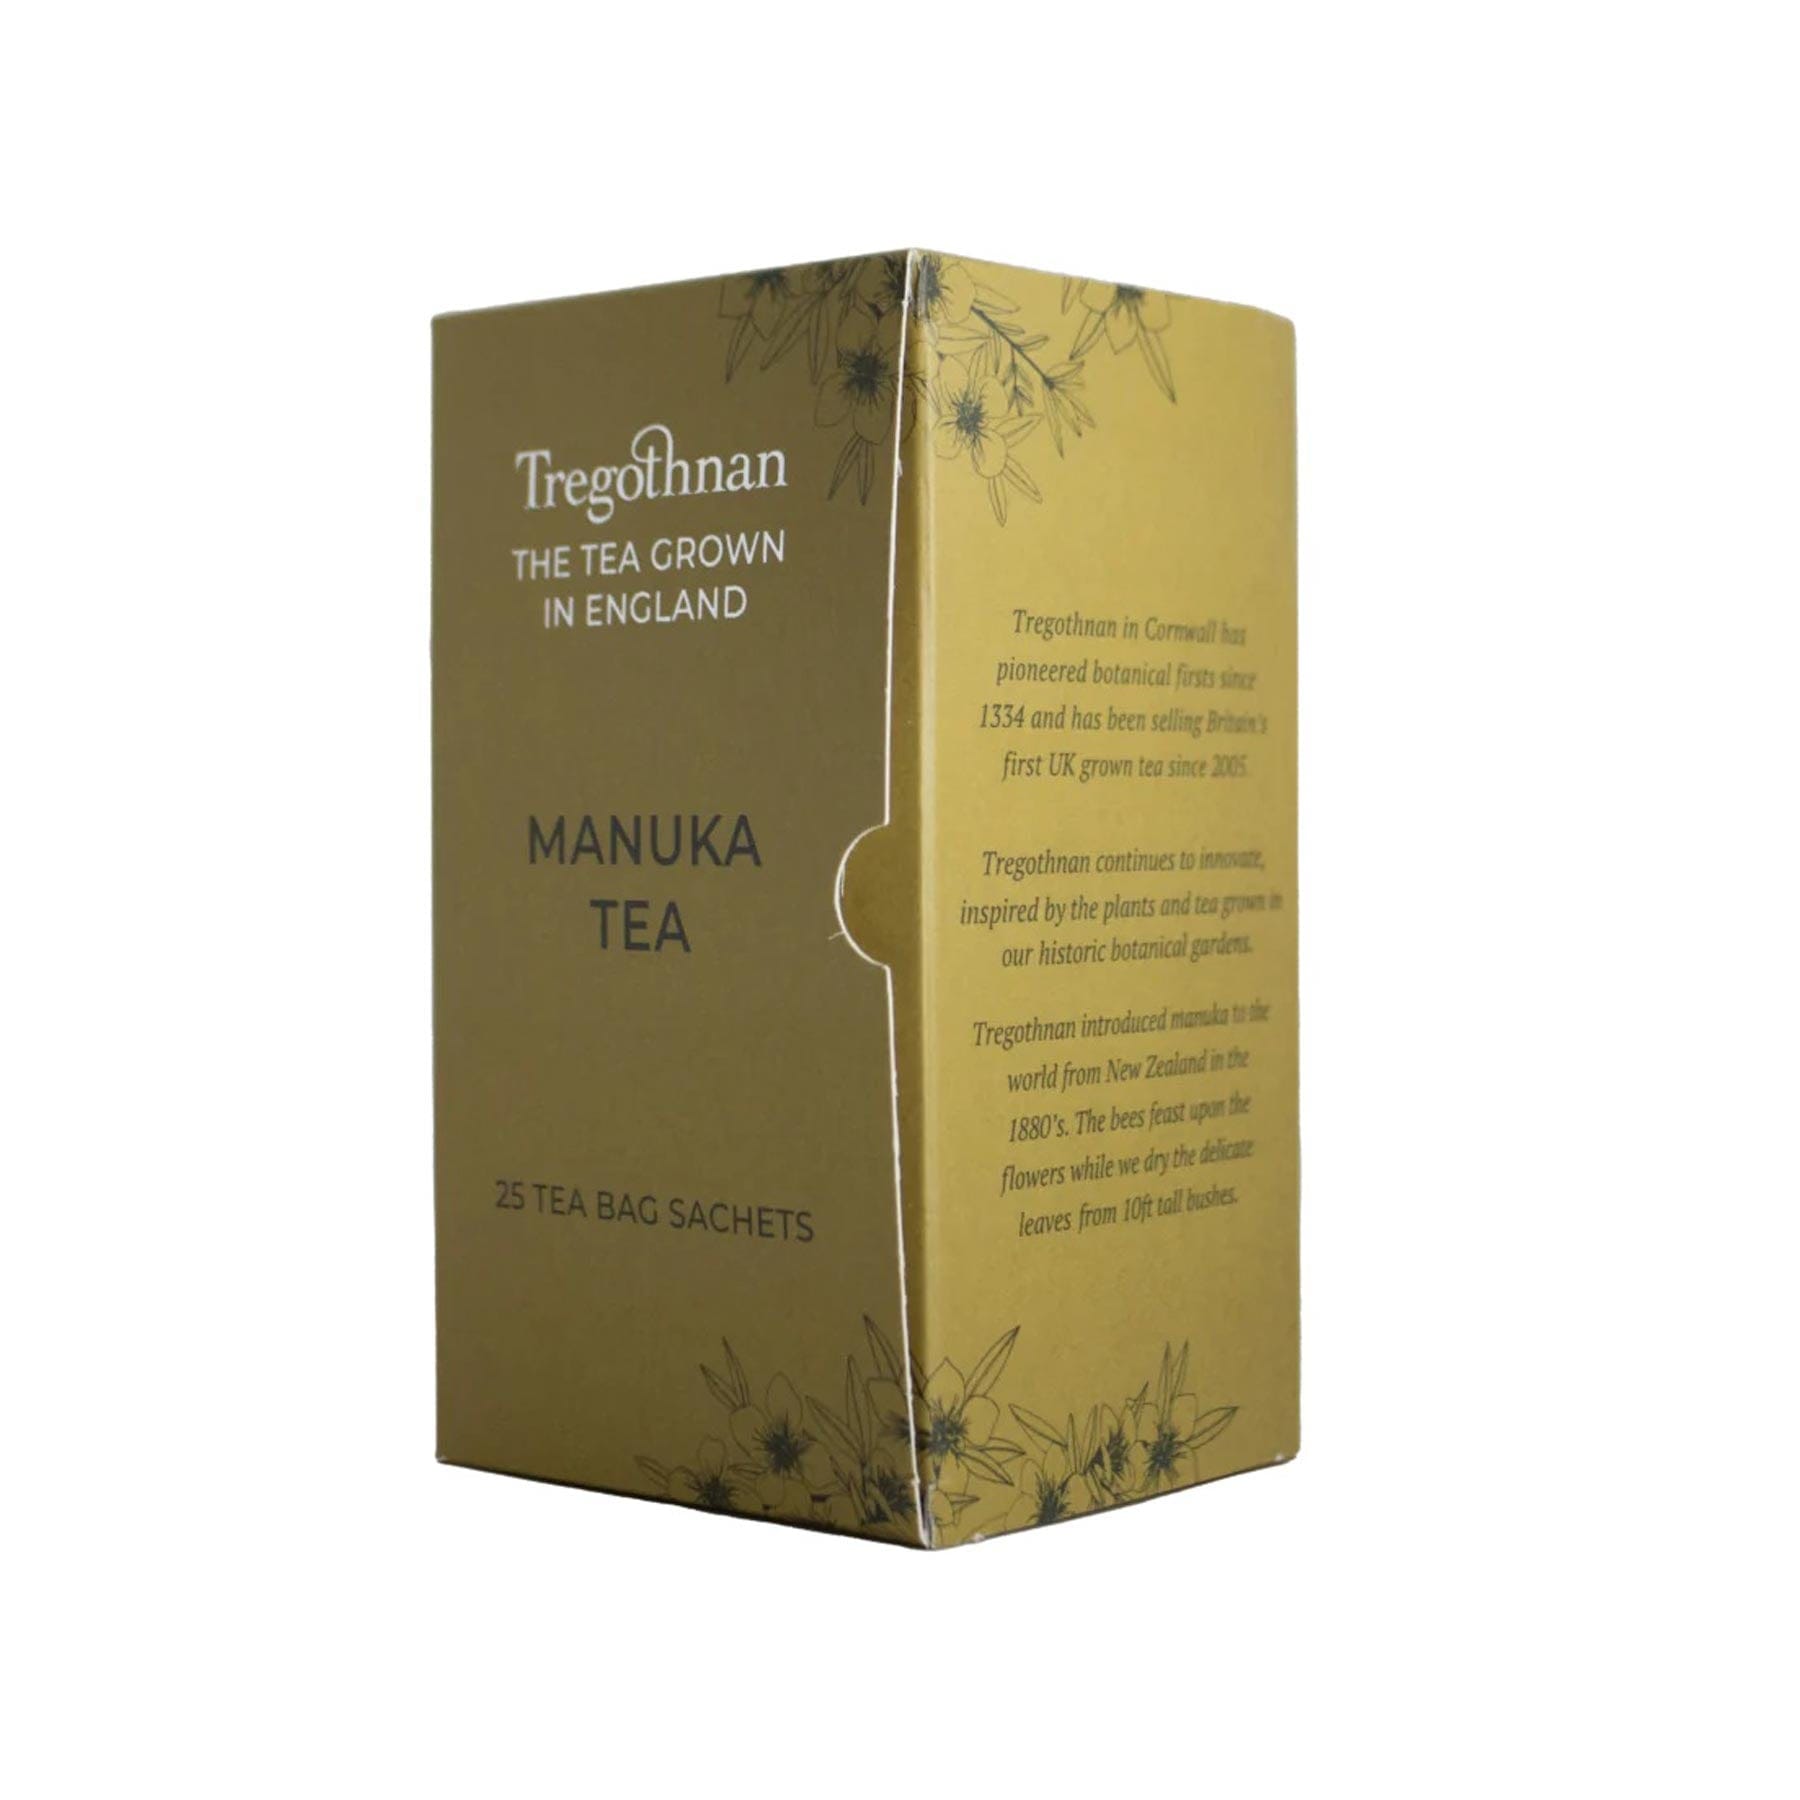 Manuka tea 25 tea bags